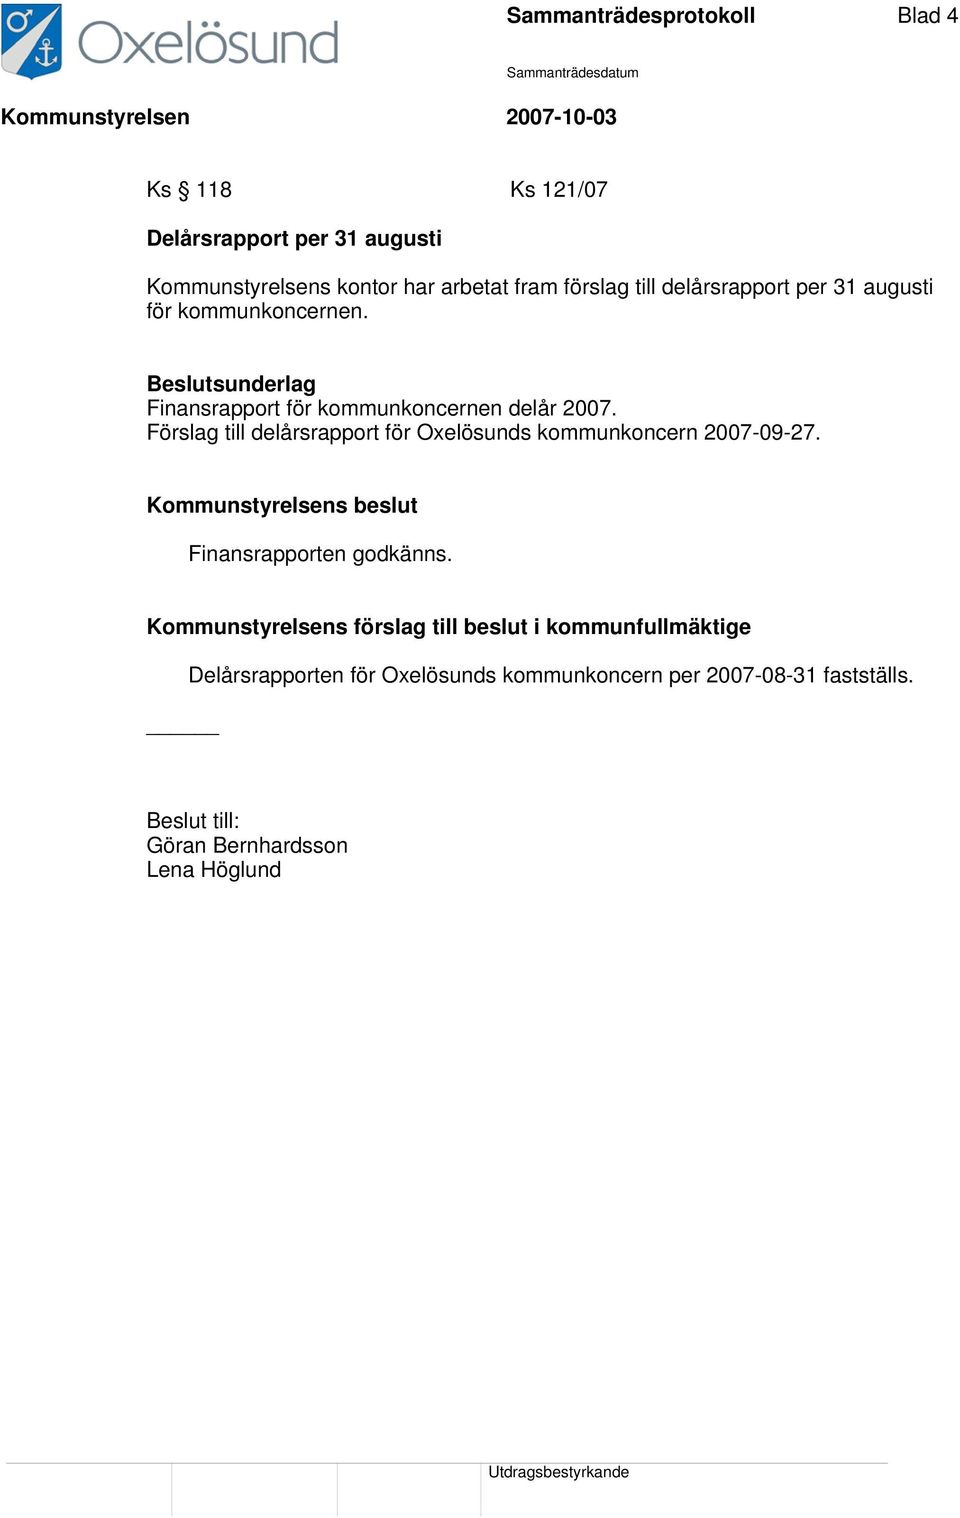 Förslag till delårsrapport för Oxelösunds kommunkoncern 2007-09-27. Finansrapporten godkänns.